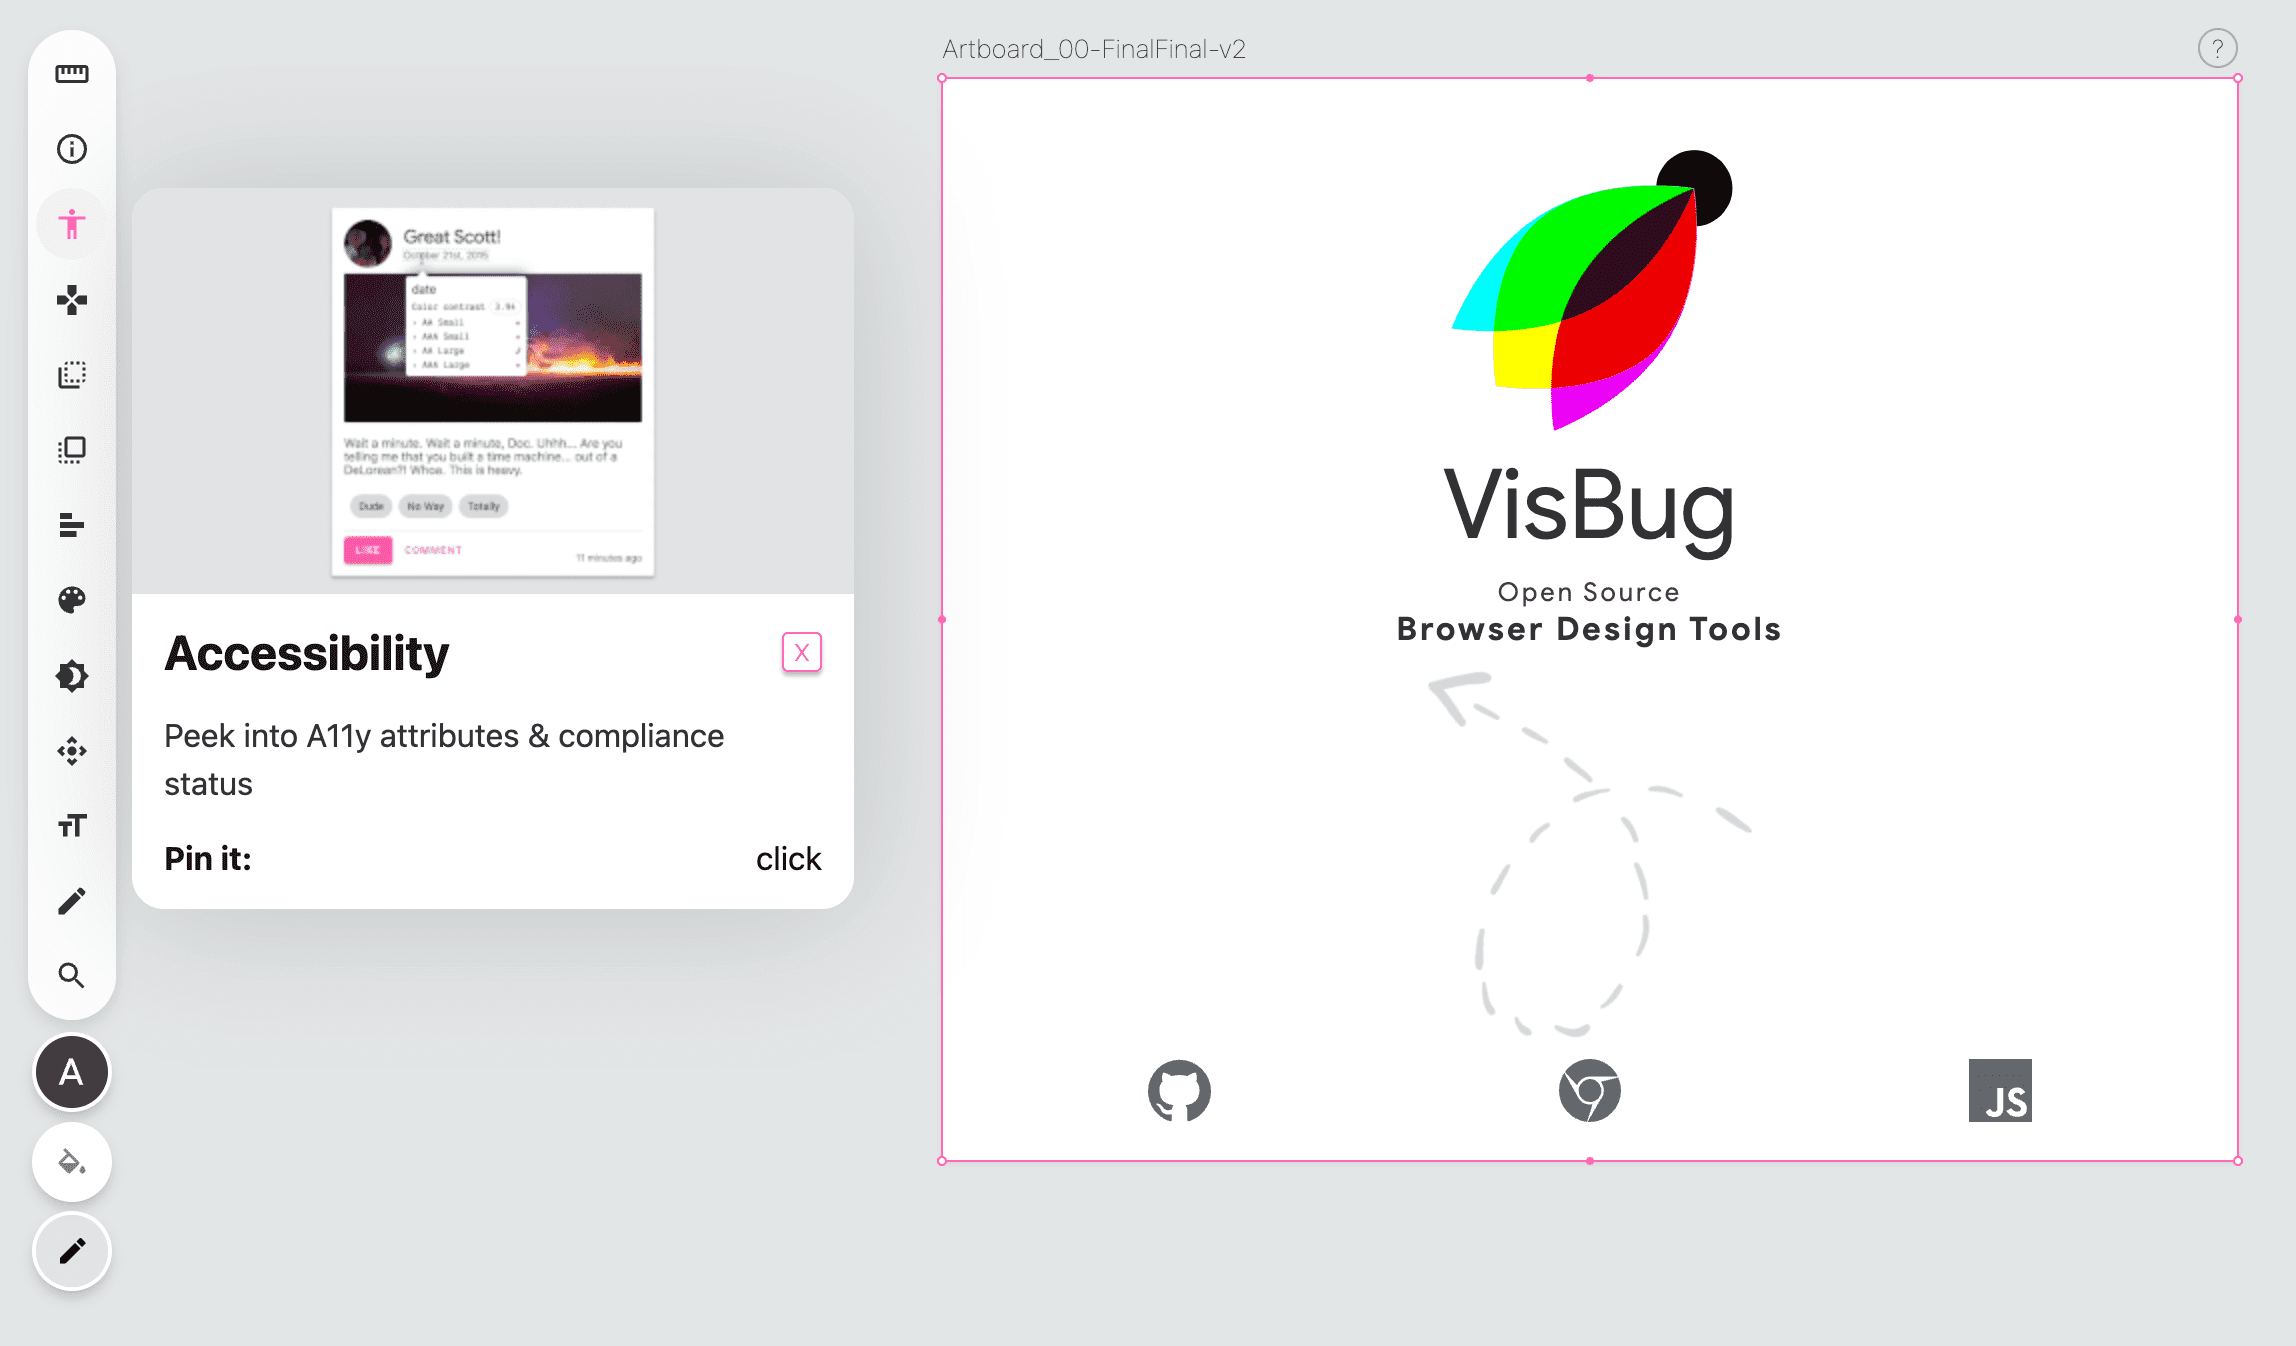 खाली पेज की बाईं ओर VisBug टूलबार का स्क्रीनशॉट, सुलभता टूल आइकॉन गुलाबी है. साथ ही, एक पॉपओवर दिखाया गया है जो टूल के निर्देश देता है.